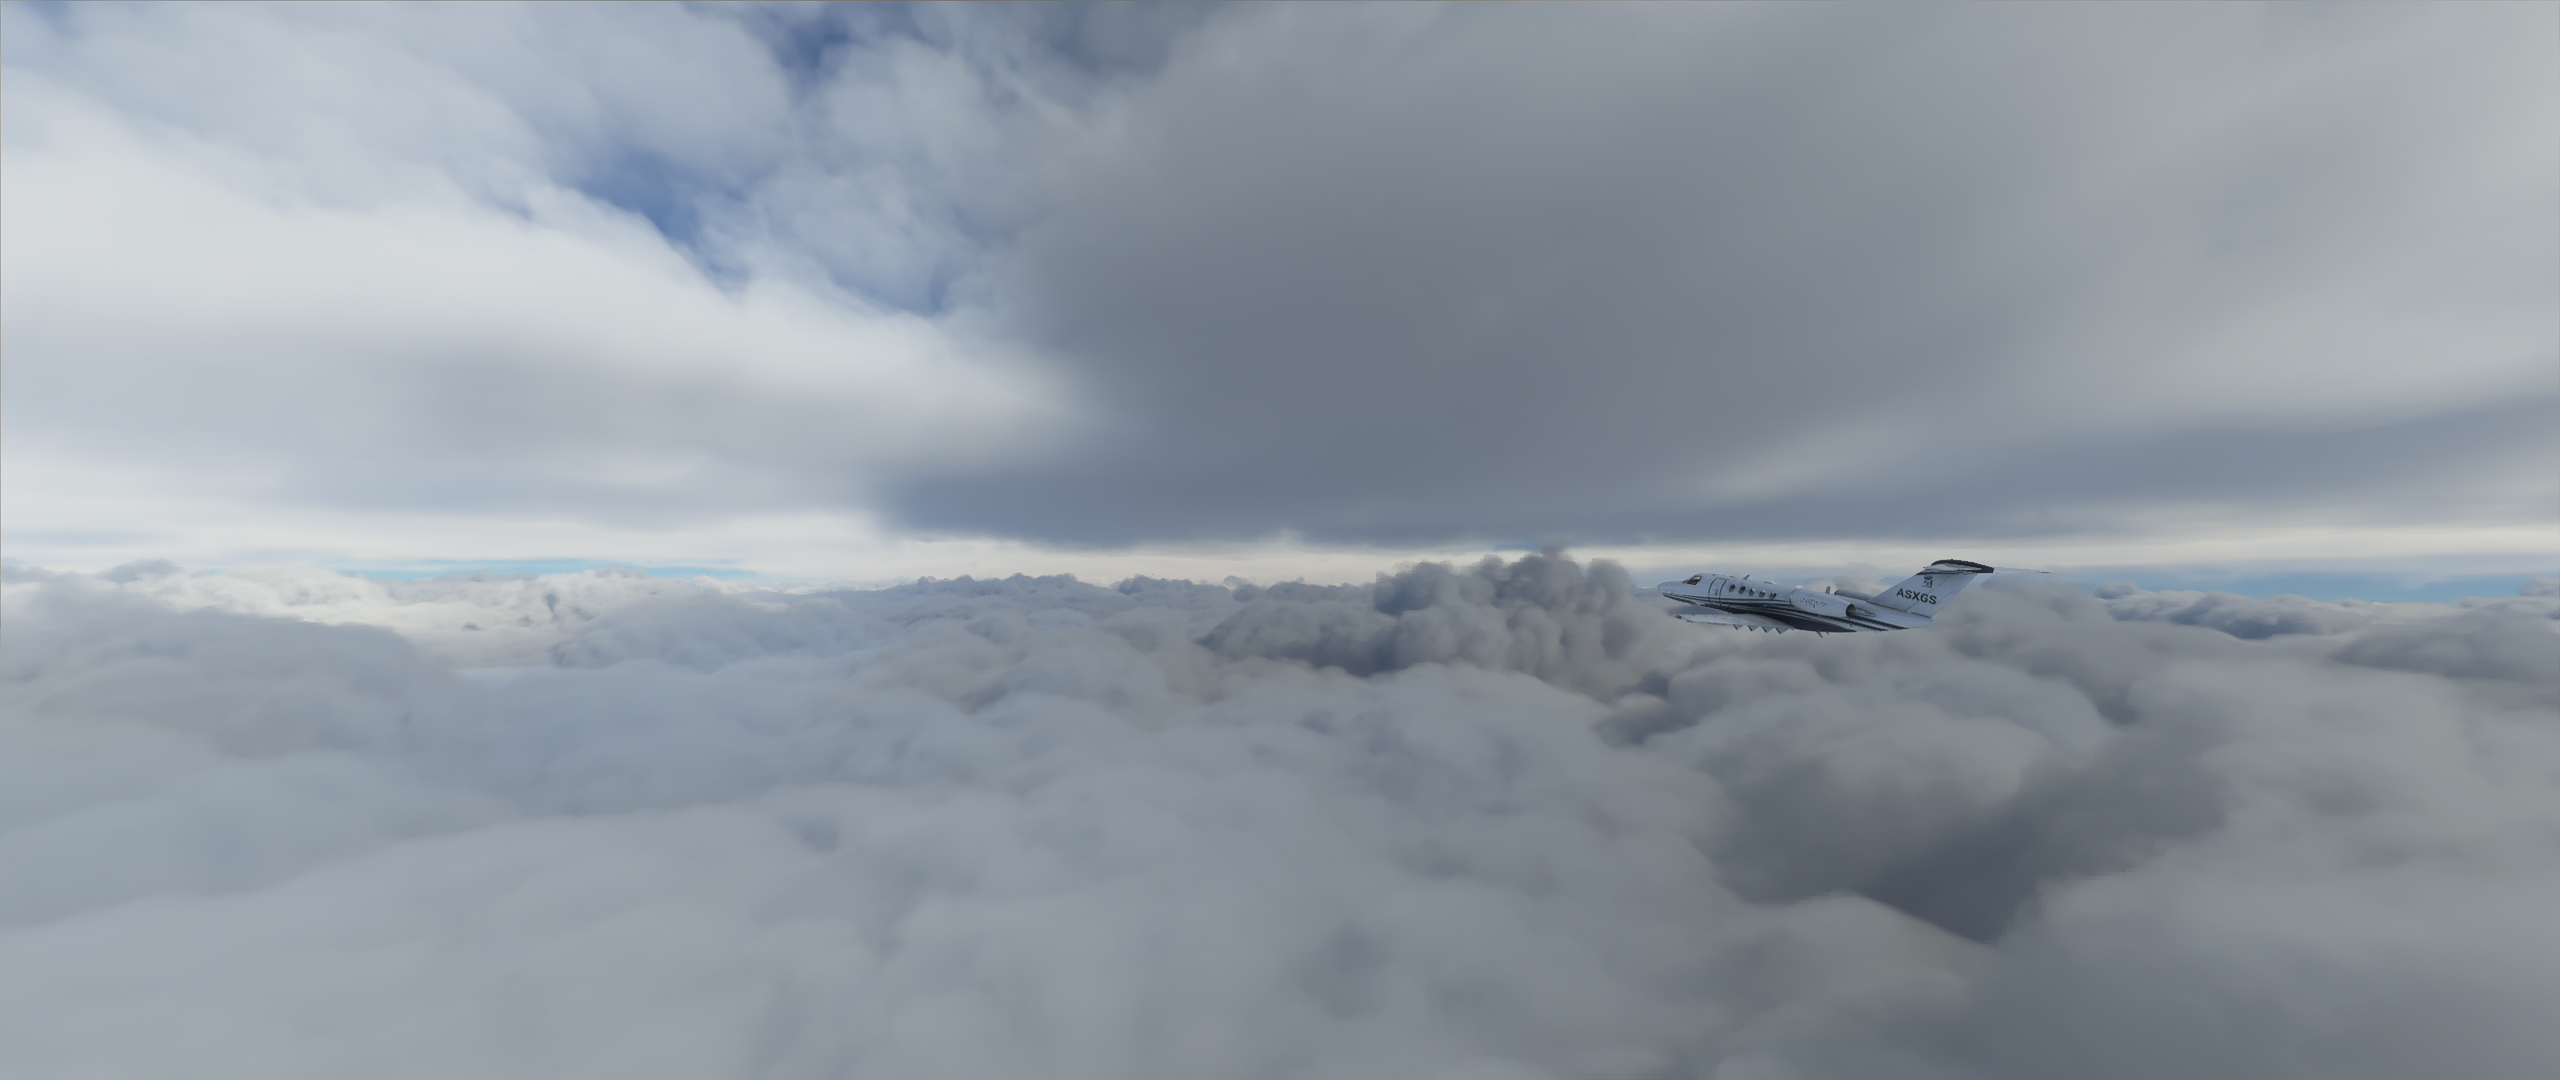 Microsoft Flight Simulator 2020 Clouds Cessna Video Game Art Ultrawide 2560x1080